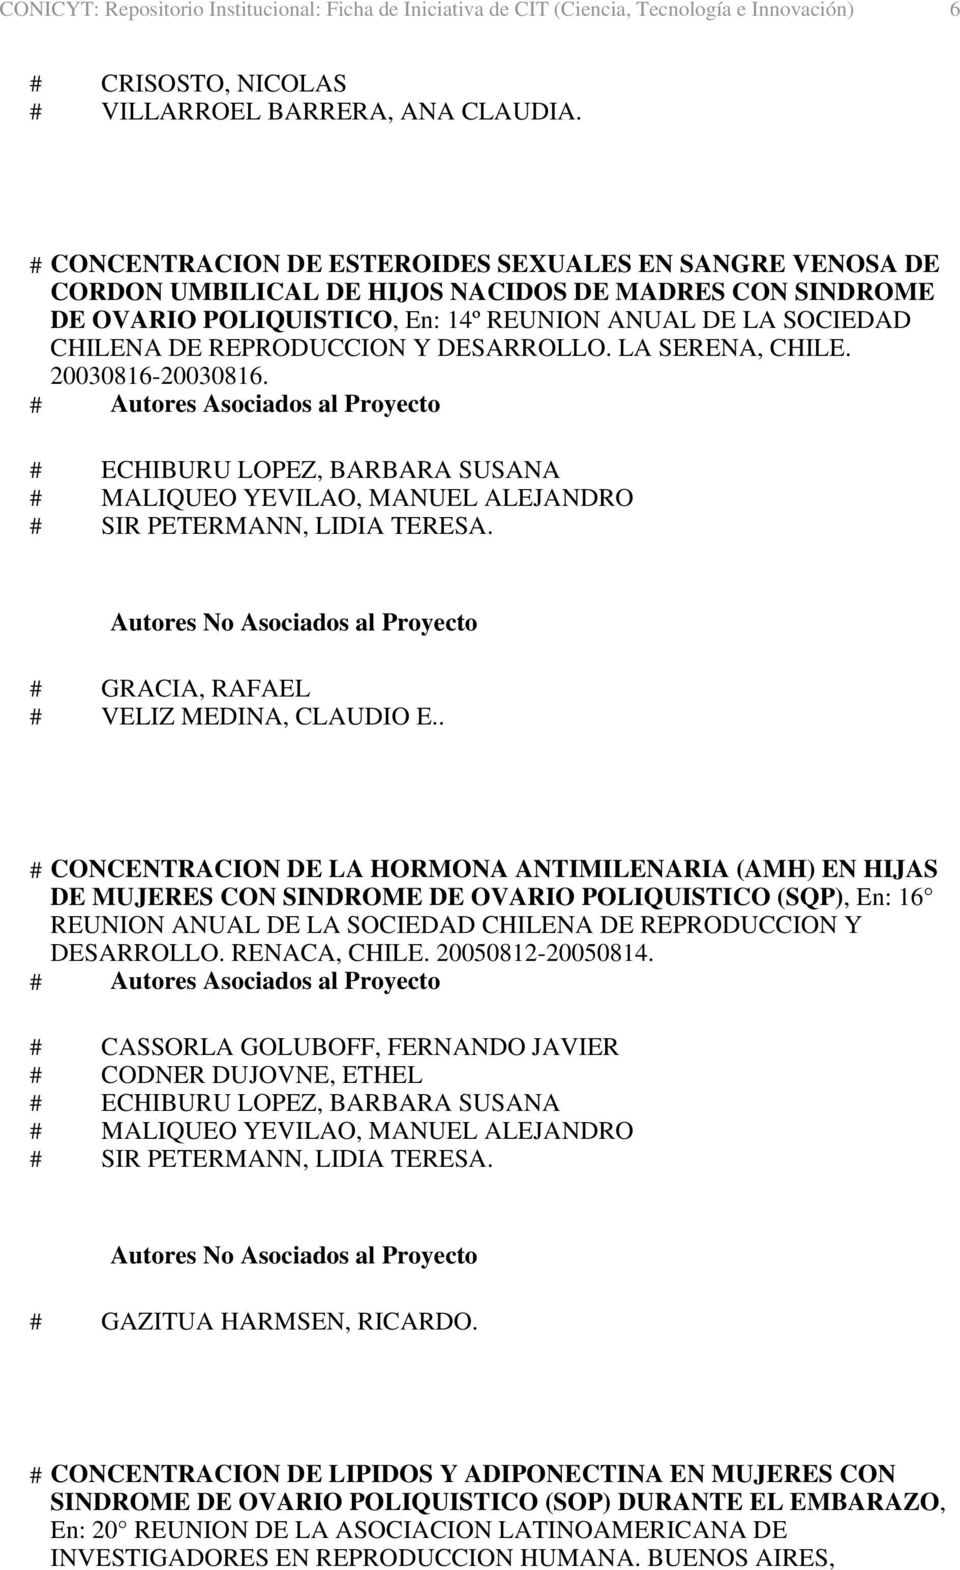 REPRODUCCION Y DESARROLLO. LA SERENA, CHILE. 20030816-20030816. # GRACIA, RAFAEL # VELIZ MEDINA, CLAUDIO E.